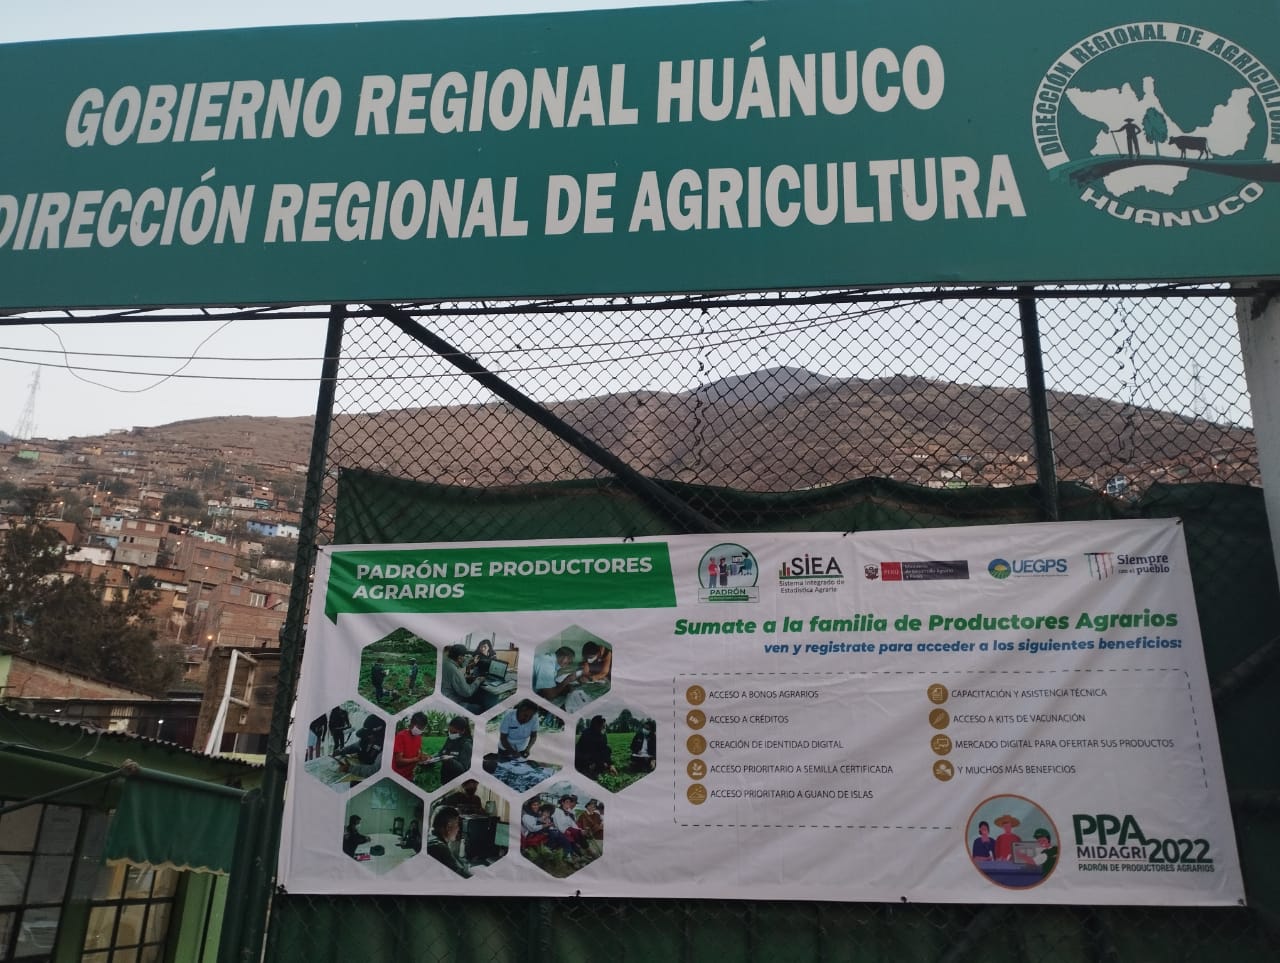 Gobierno Regional de Huánuco - Dirección Regional de Agricultura, difundiendo el PPA